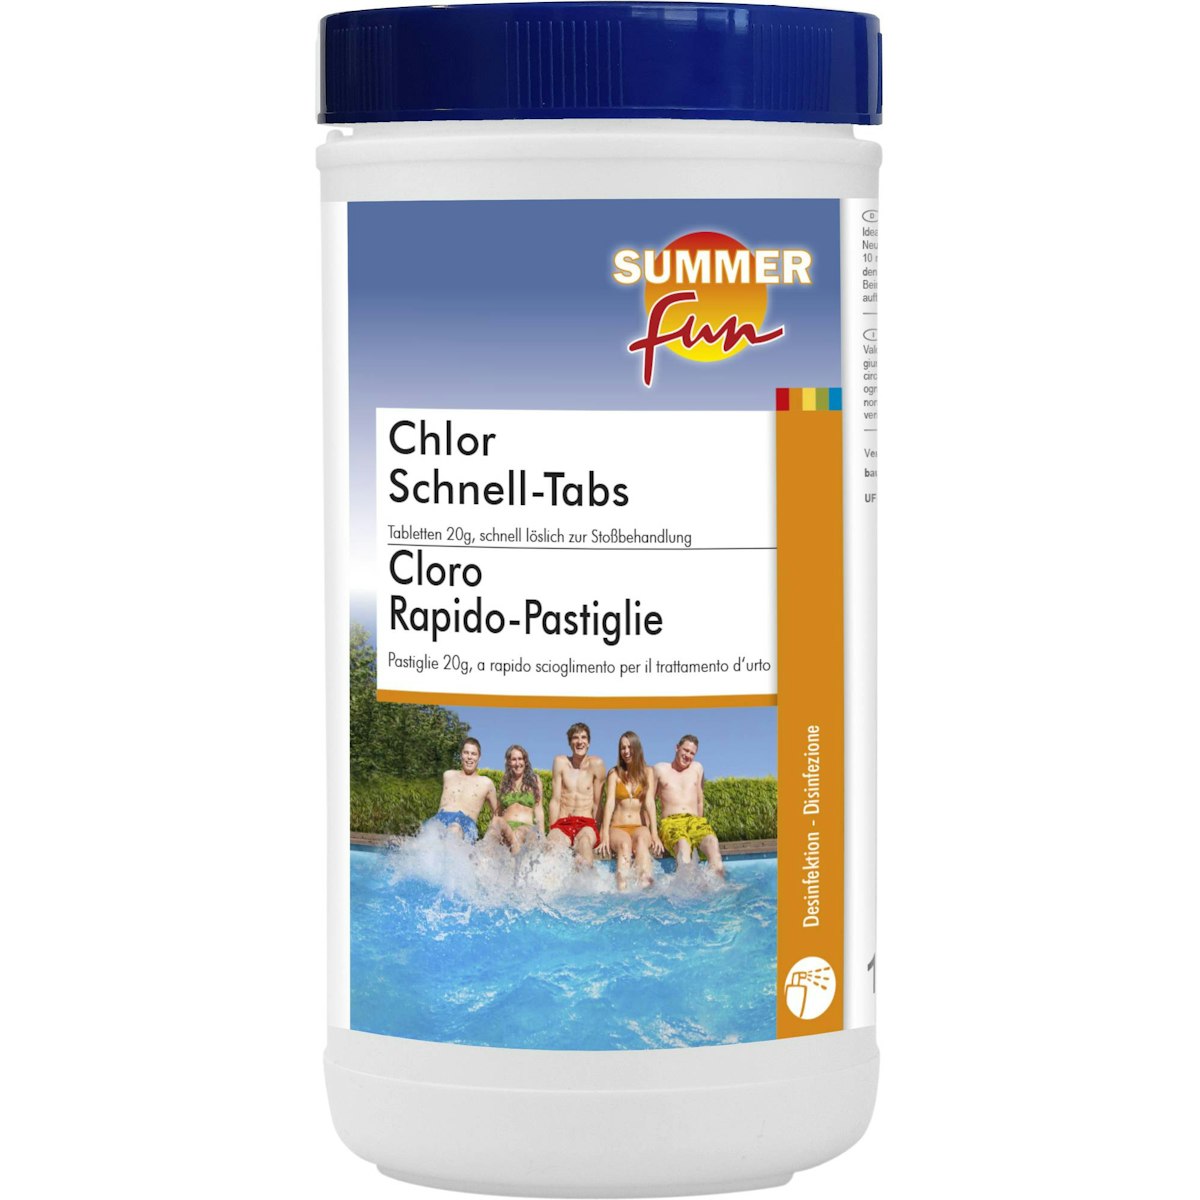 Summer Fun Chlortabletten Mini Schnell-Tabs 20g 1,2 kg von Heissner